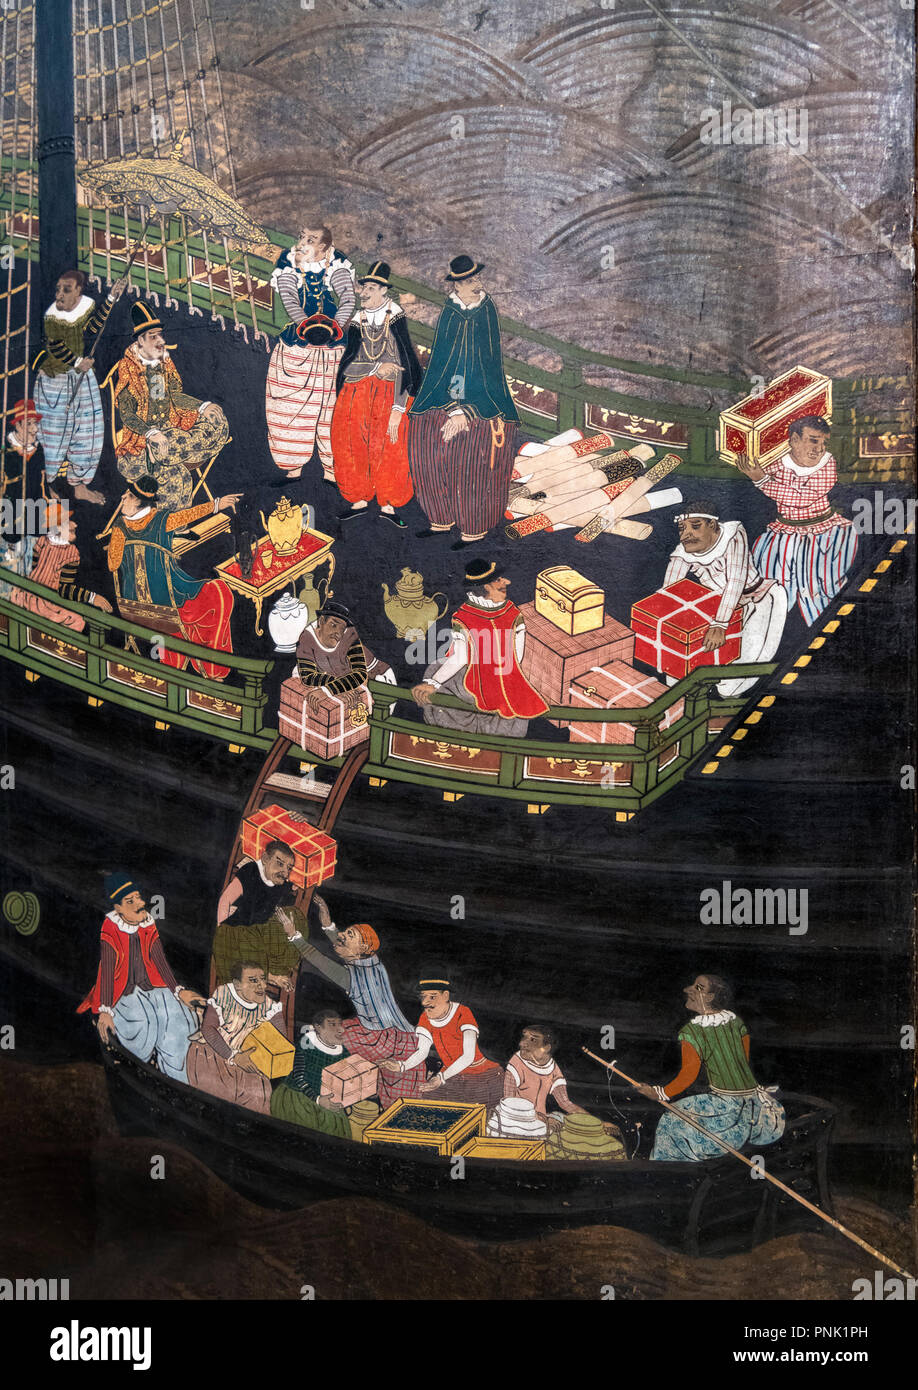 Japanische Namban-zugeschrieben, Kano Domi, Tempera auf Papier, Blattgold, Seide, Lack und Metall, 1593-1602 (momoyama Periode). Stockfoto